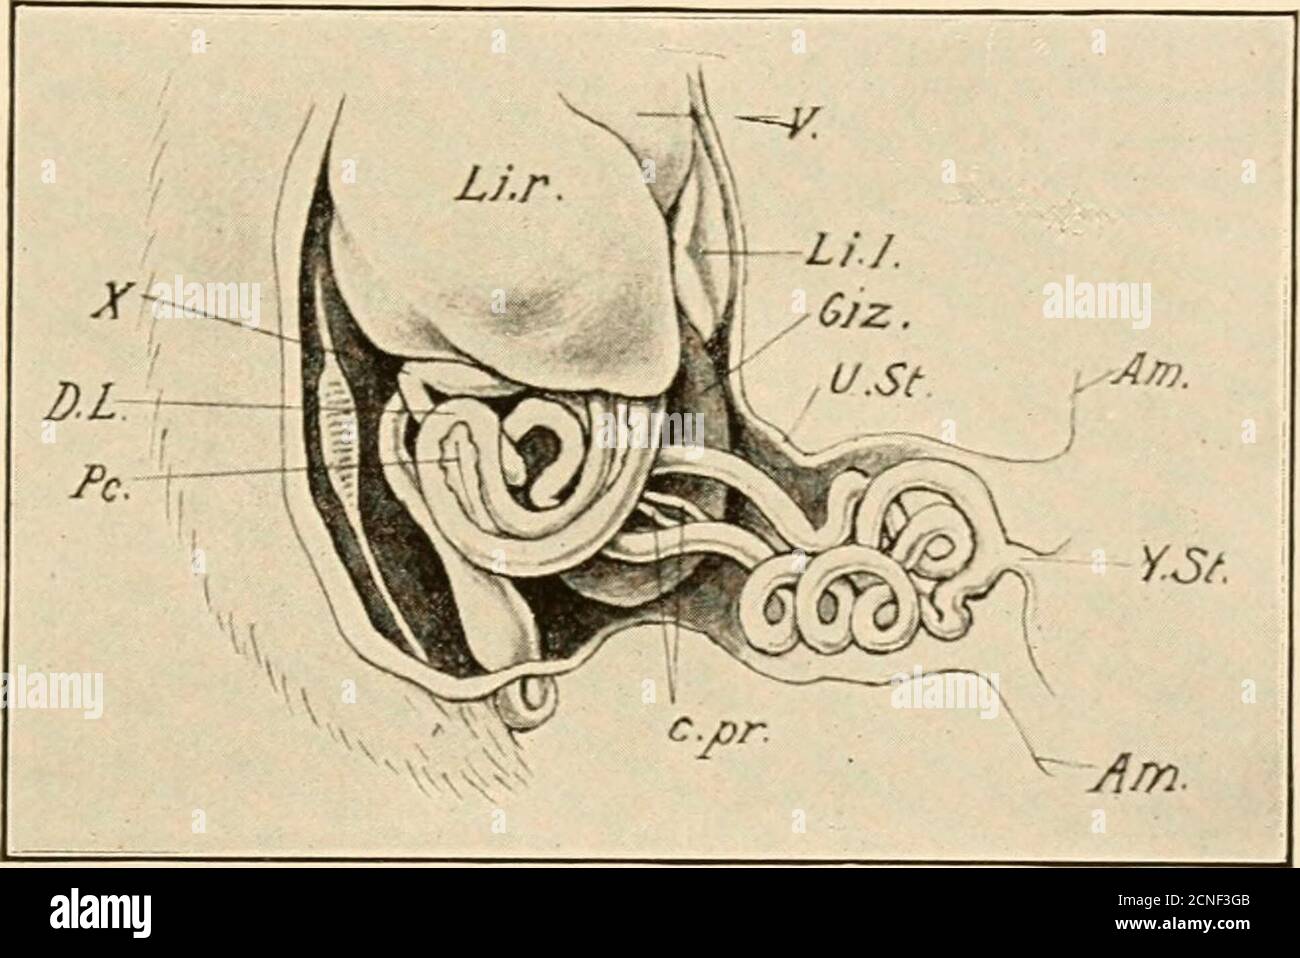 . Lo sviluppo del pulcino; un'introduzione all'embrio. Uodenalloop è relativamente leggermente sviluppato in questo momento, e forma curva aperta appena sotto il lobo destro del fegato. Il suo arto ascendente si alza in posizione dorsale alta appena dietro il fegato, e il TRATTO ALIMEXTARY E LE SUE APPENDICI 311 pieghe si affilano^ per entrare nell'arto discendente del secondo loop.questa curva o flessione duodeno-jejunale (X, Fig. 179) è un punto fisso relativamentonella crescita dell'intestino, e segna il bound-ary tra il duodeno e le parti successive del vaiolo. Il secondo anello scende in profondità Foto Stock